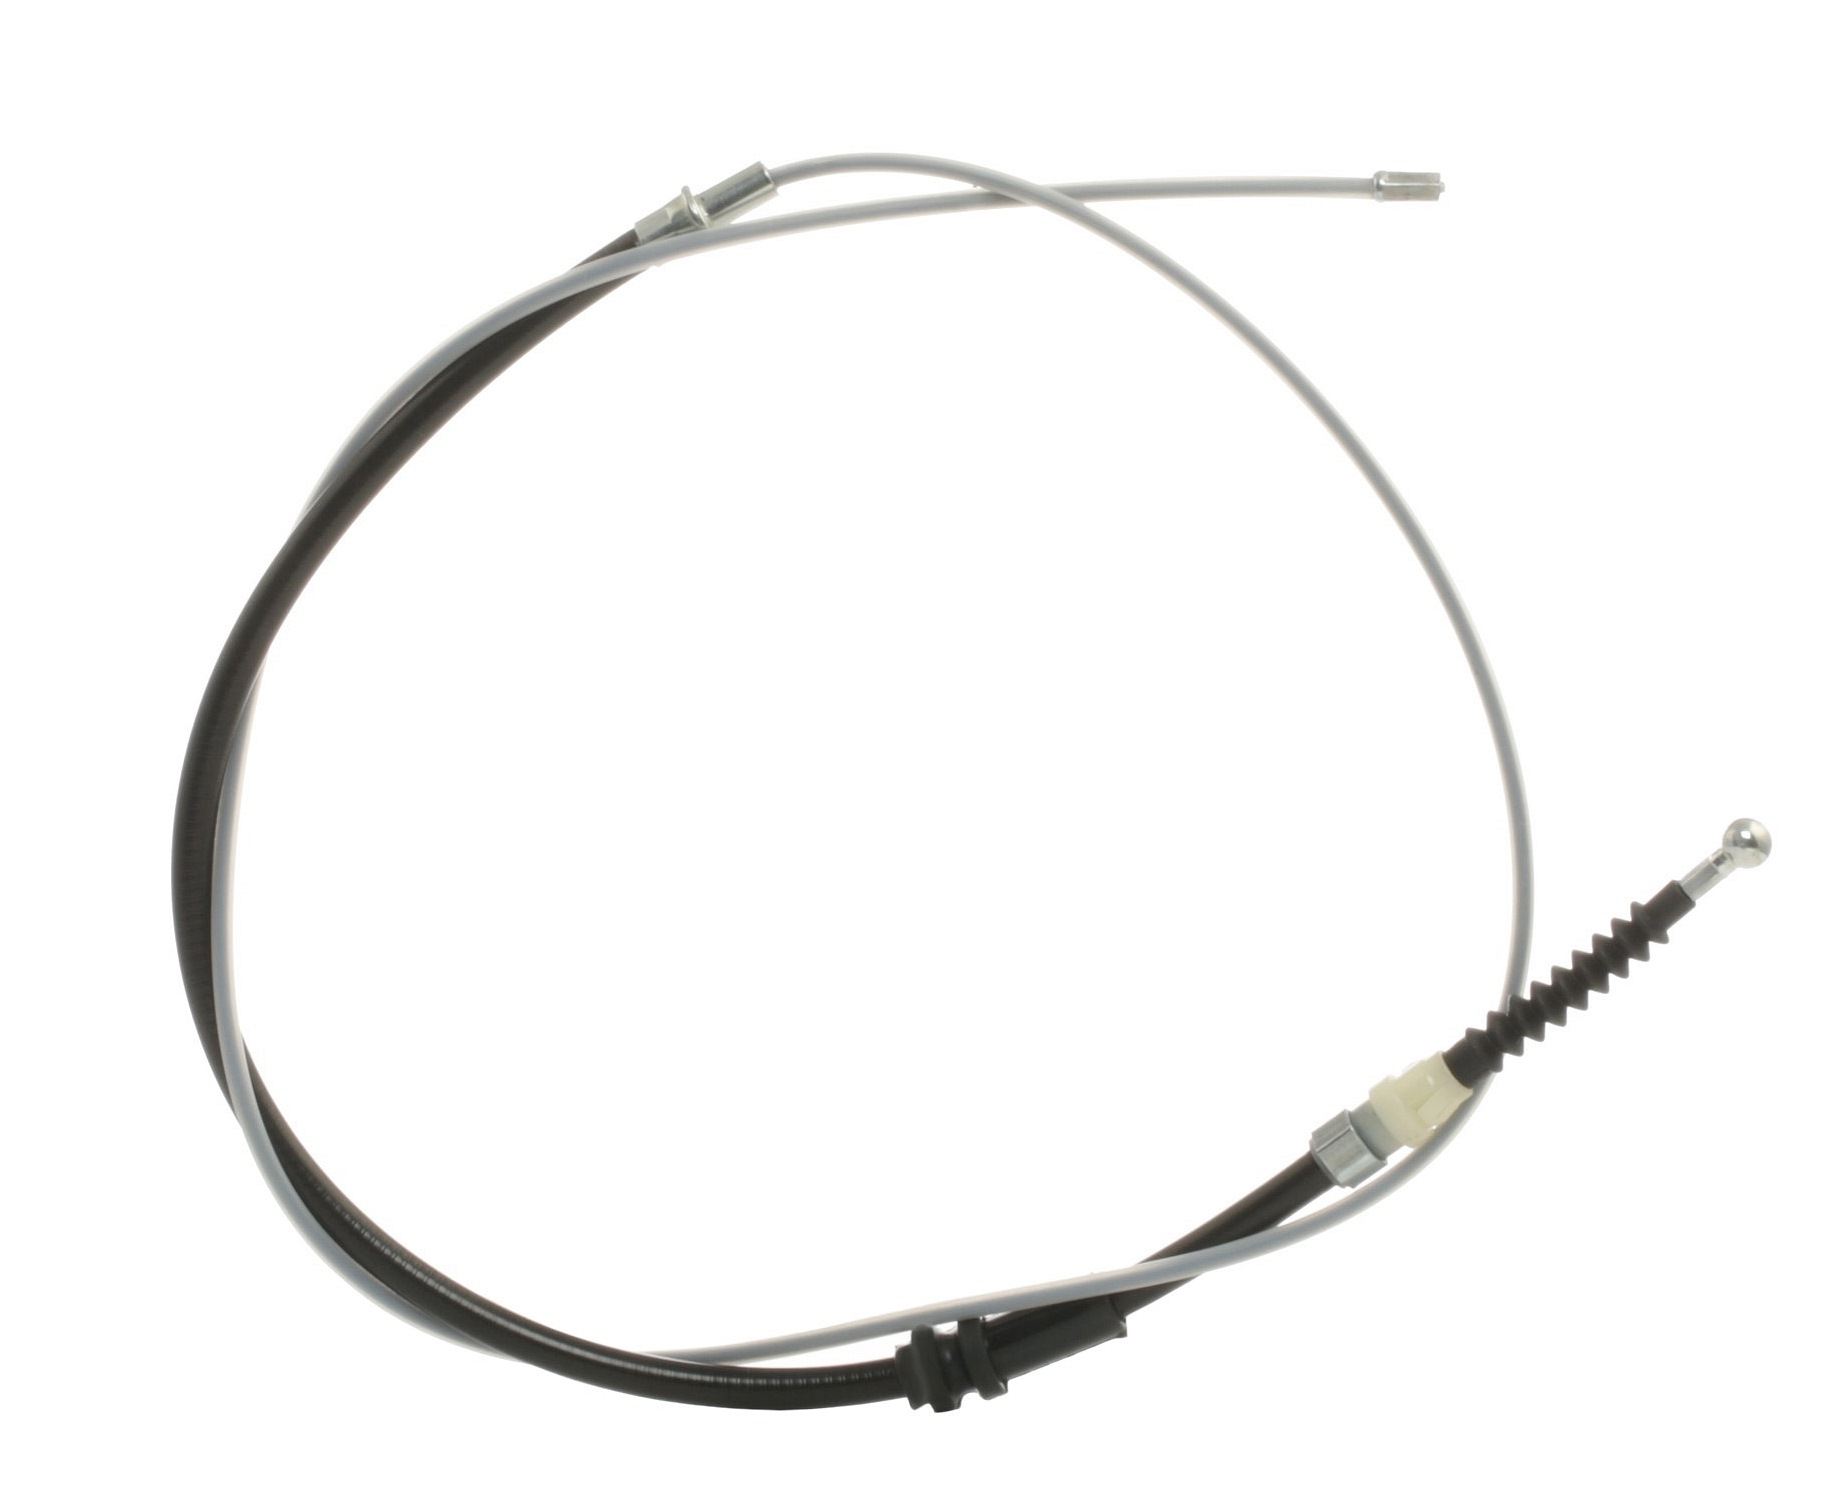 STARK SKCPB-1050175 Hand brake cable Left Rear, Right Rear, 1713mm